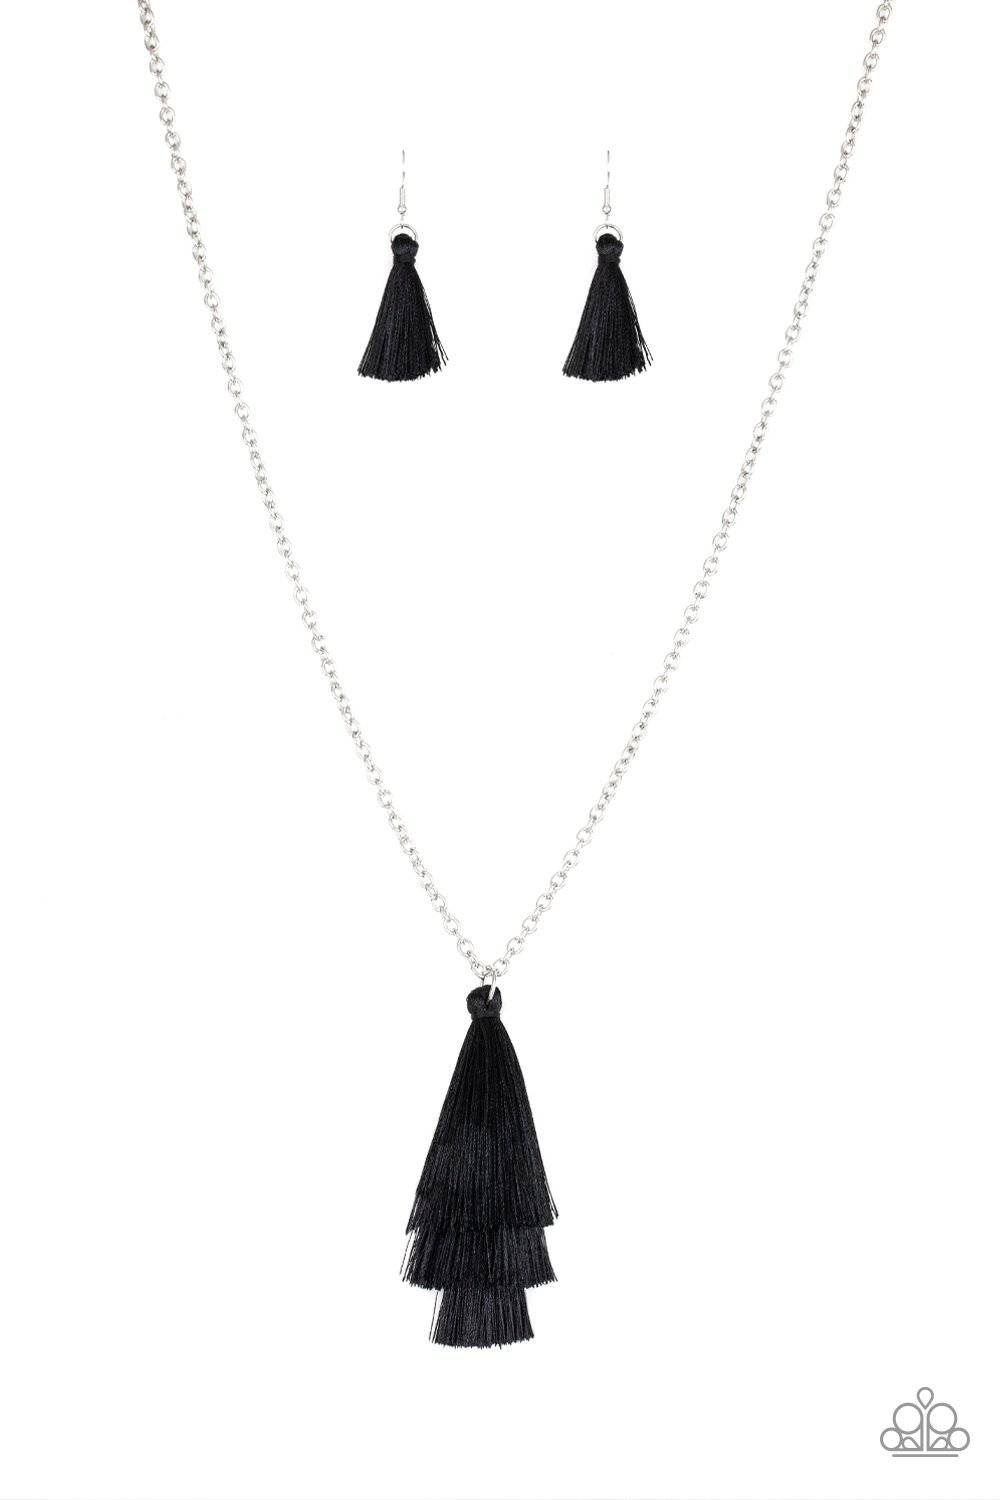 Triple The Tassel - Black Tassel Necklace - Paparazzi Accessories - GlaMarous Titi Jewels